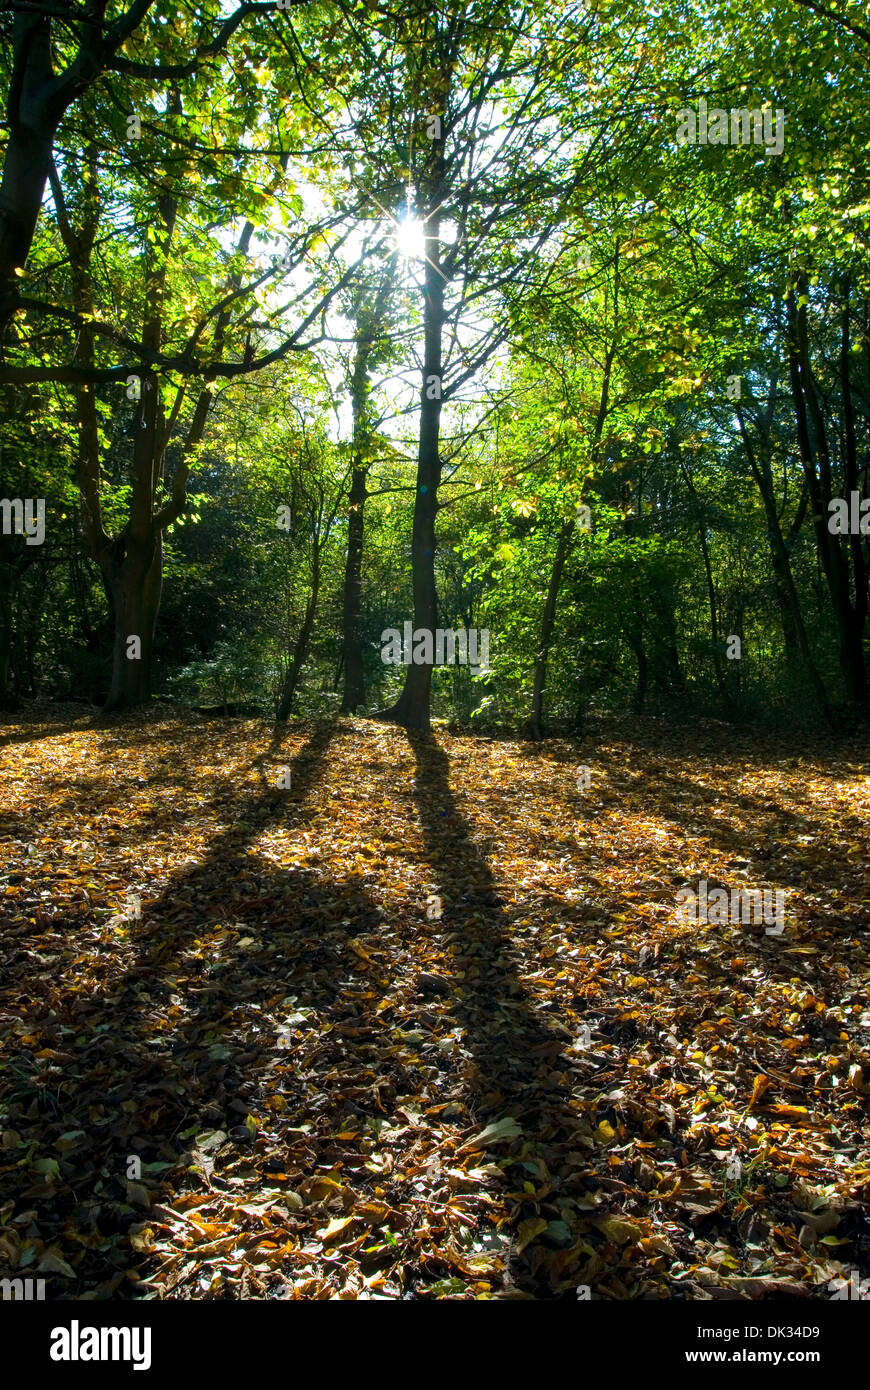 Bäume in einem Wald mit Lichteinfall durch Äste, Herbst, Wald, Schatten, Blätter, Baldachin Stockfoto